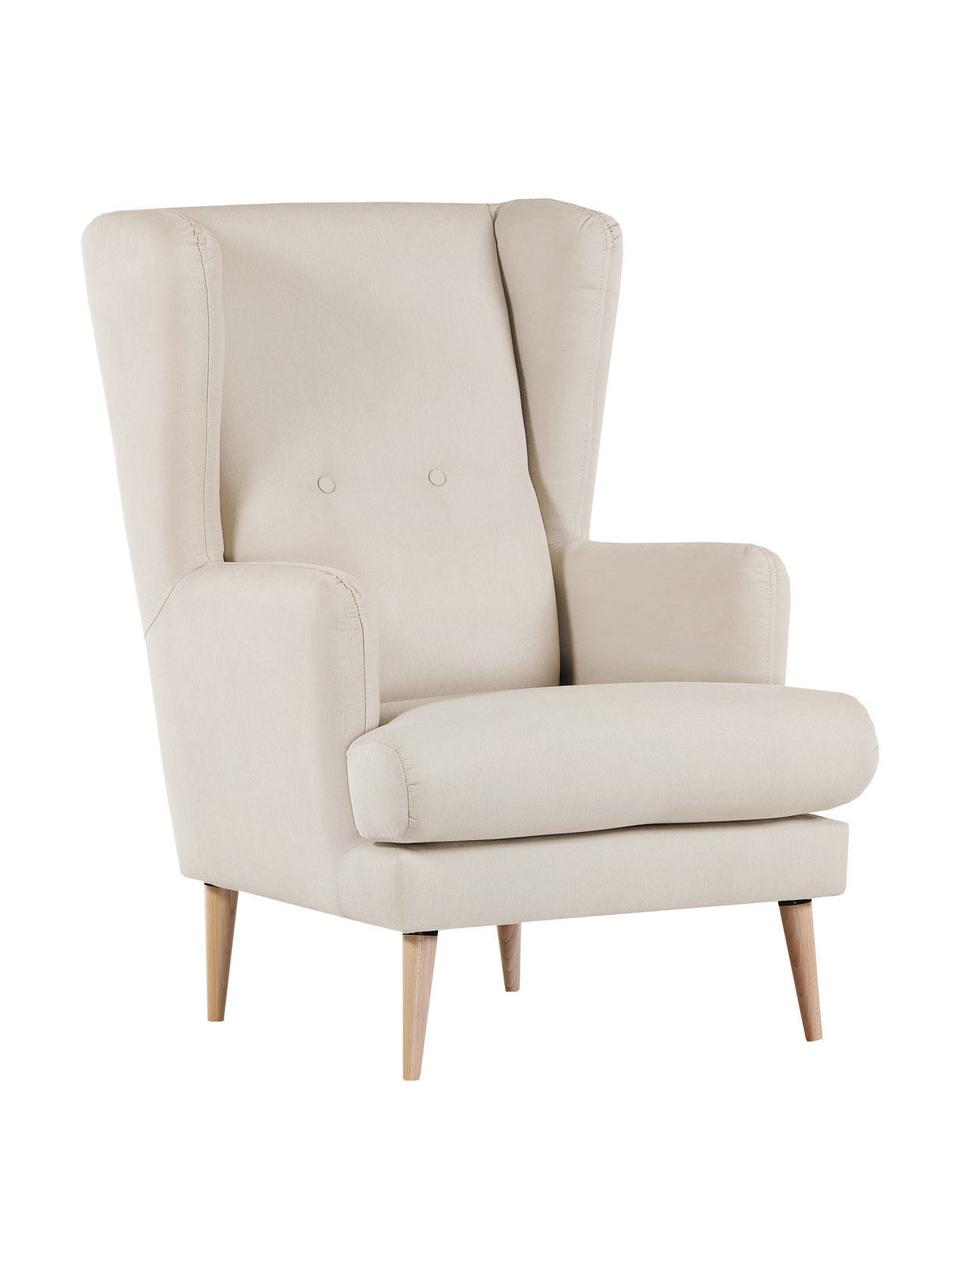 Fotel uszak w stylu scandi Robin, Tapicerka: 90% poliester, 10% poliam, Nogi: drewno lakierowane, Beżowa tkanina, S 77 x G 85 cm